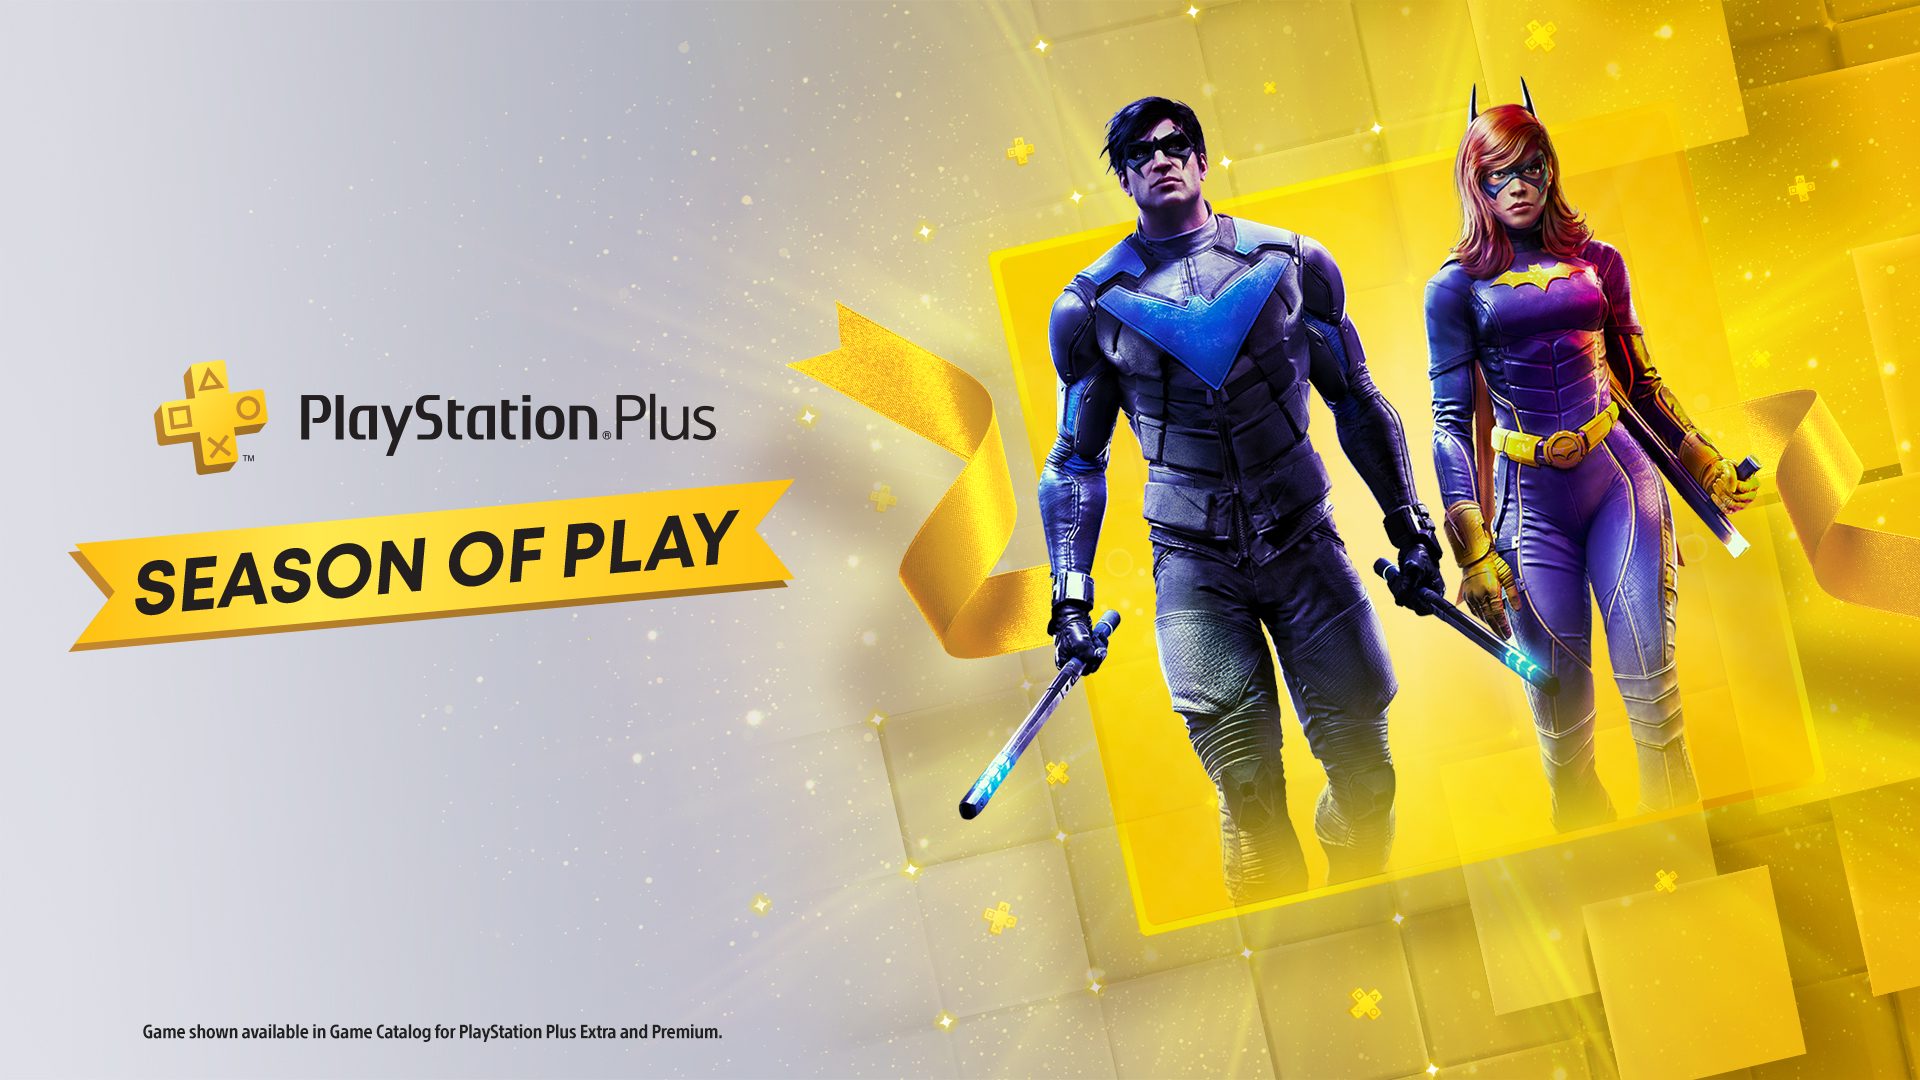 Pripravte sa, sezóna PlayStation Plus začína zajtra – PlayStation.Blog